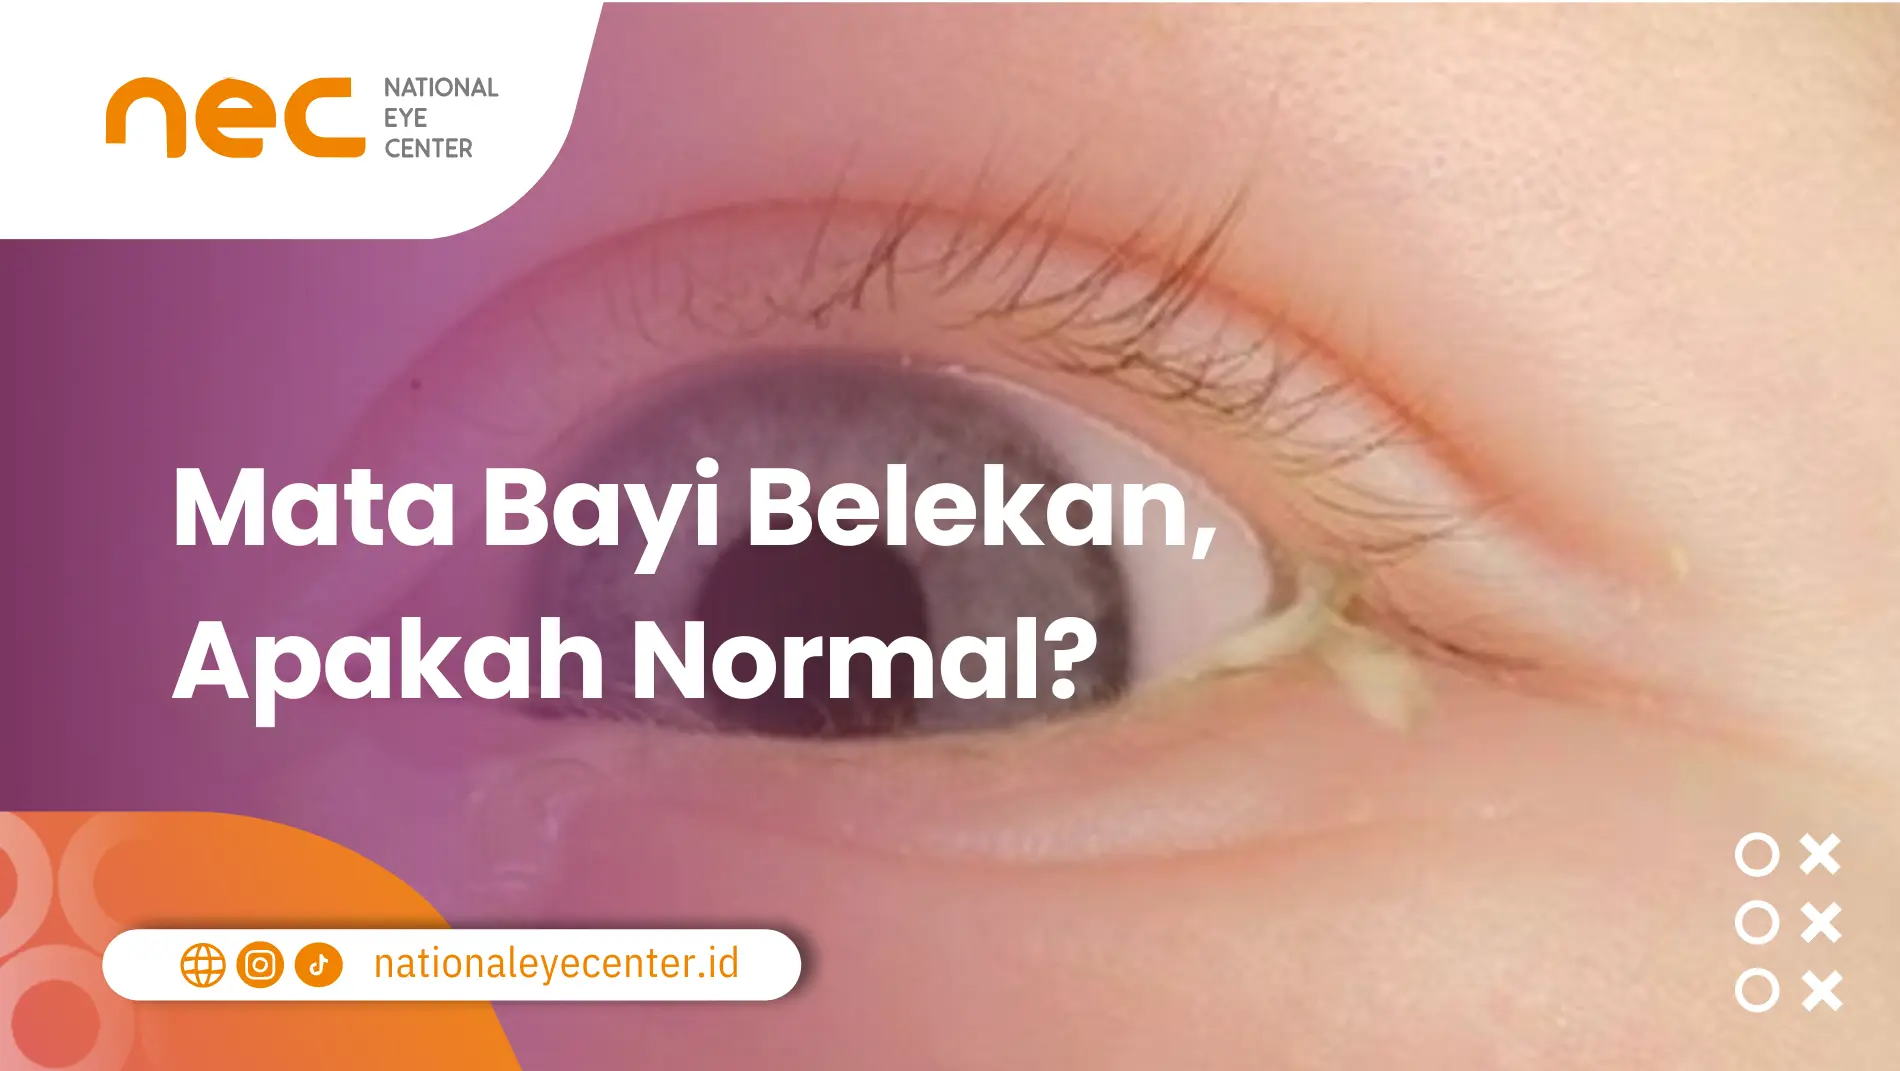 Mata Bayi Belekan Apakah Normal